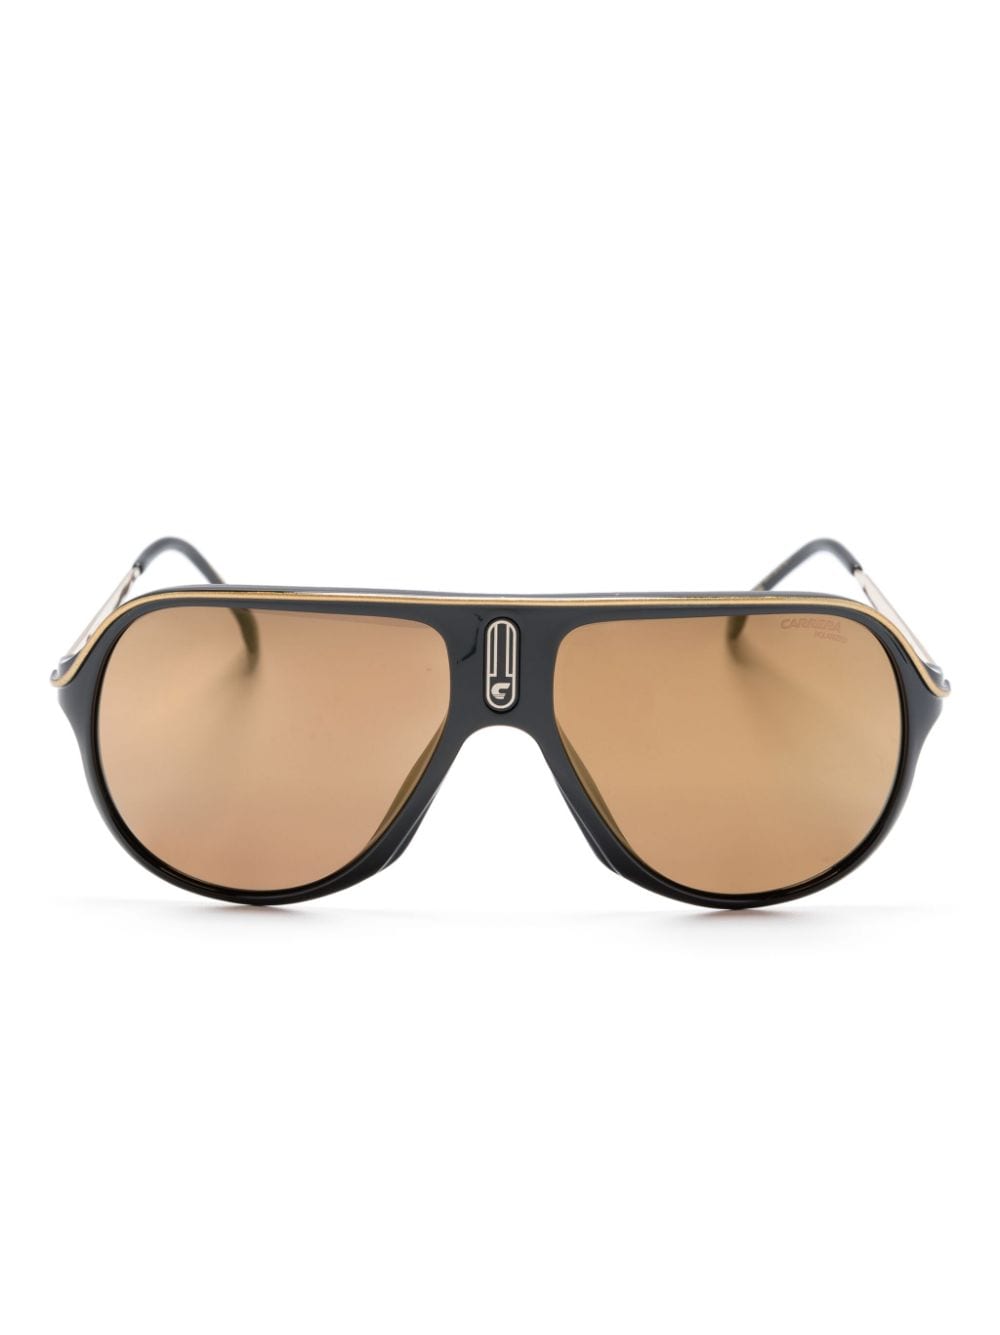 Carrera Safari 65/n Pilot-frame Sunglasses In Black